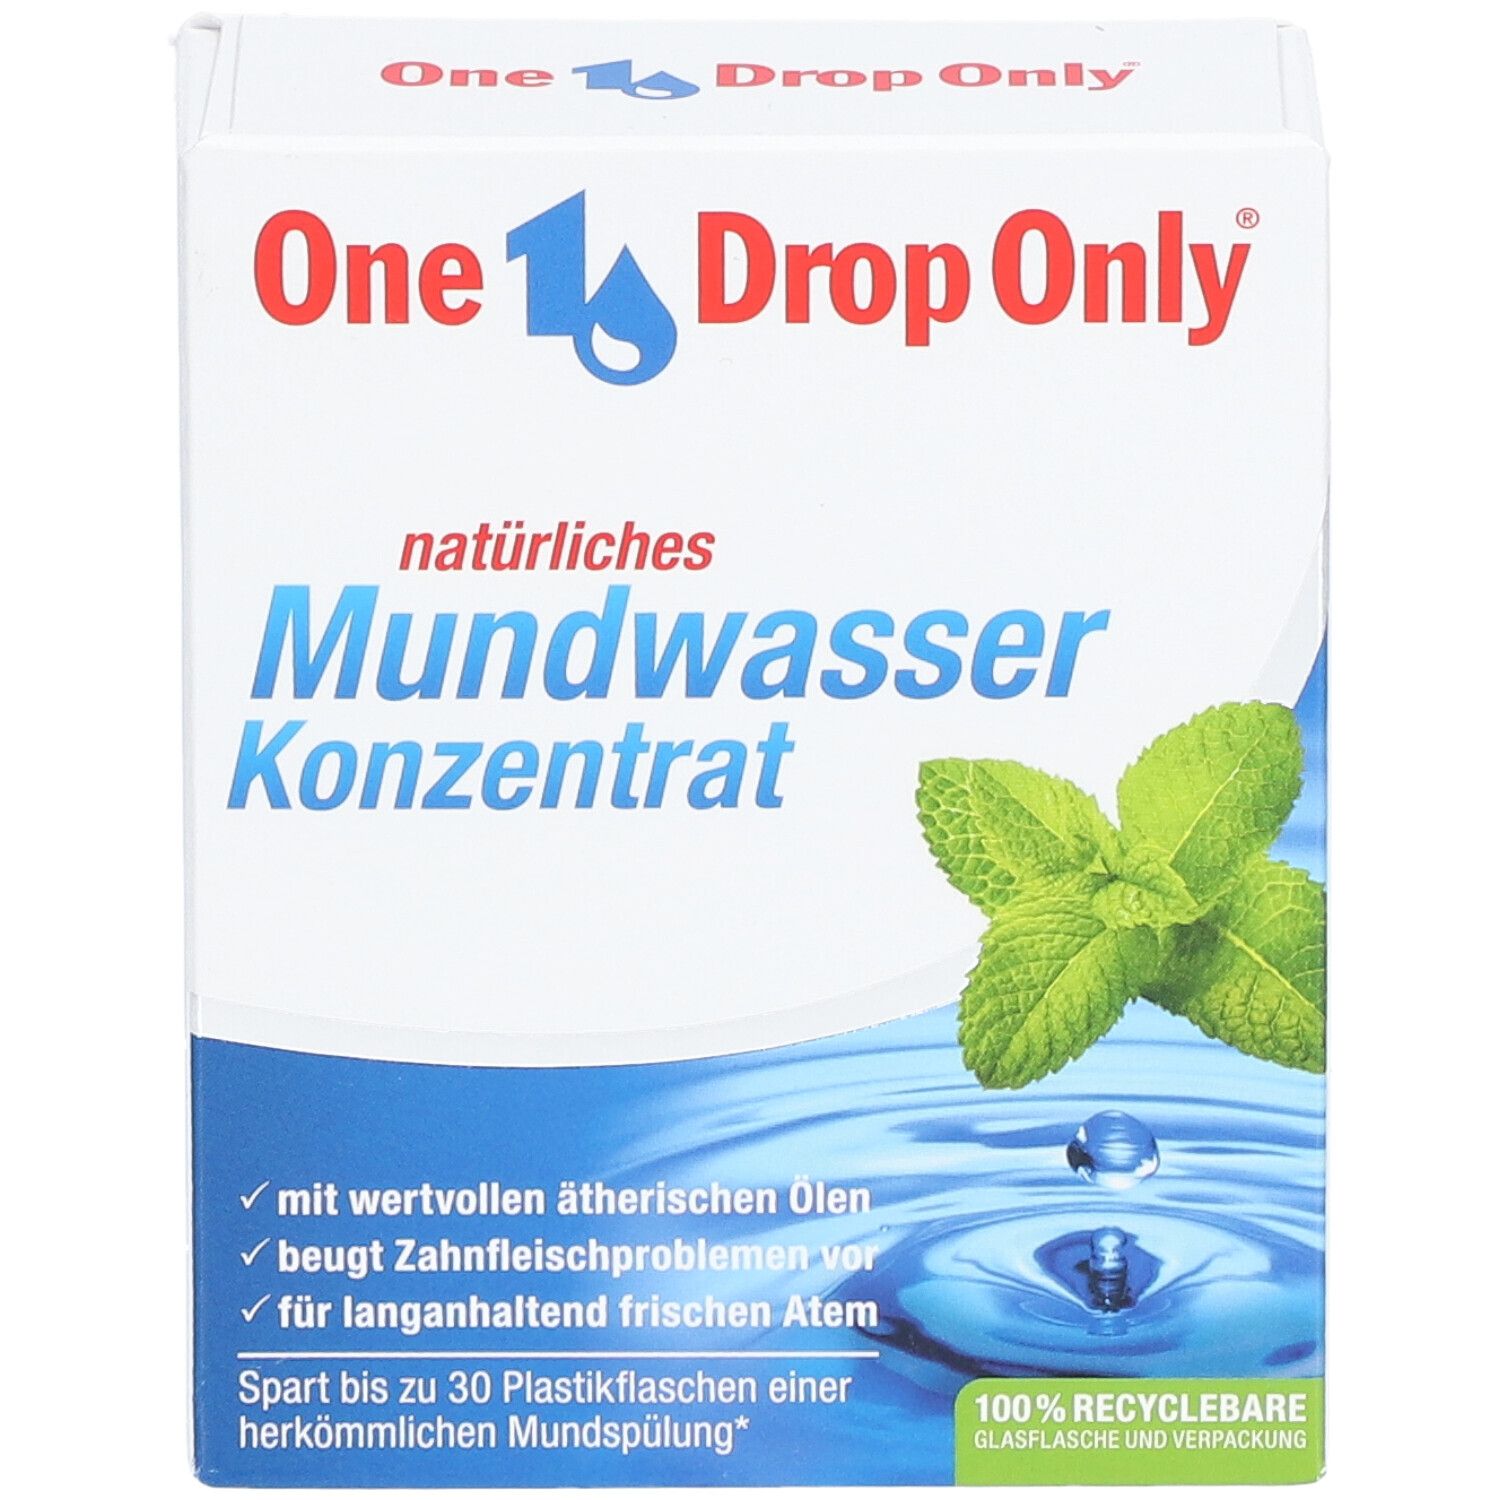 One Drop Only® Mundwasser Konzentrat